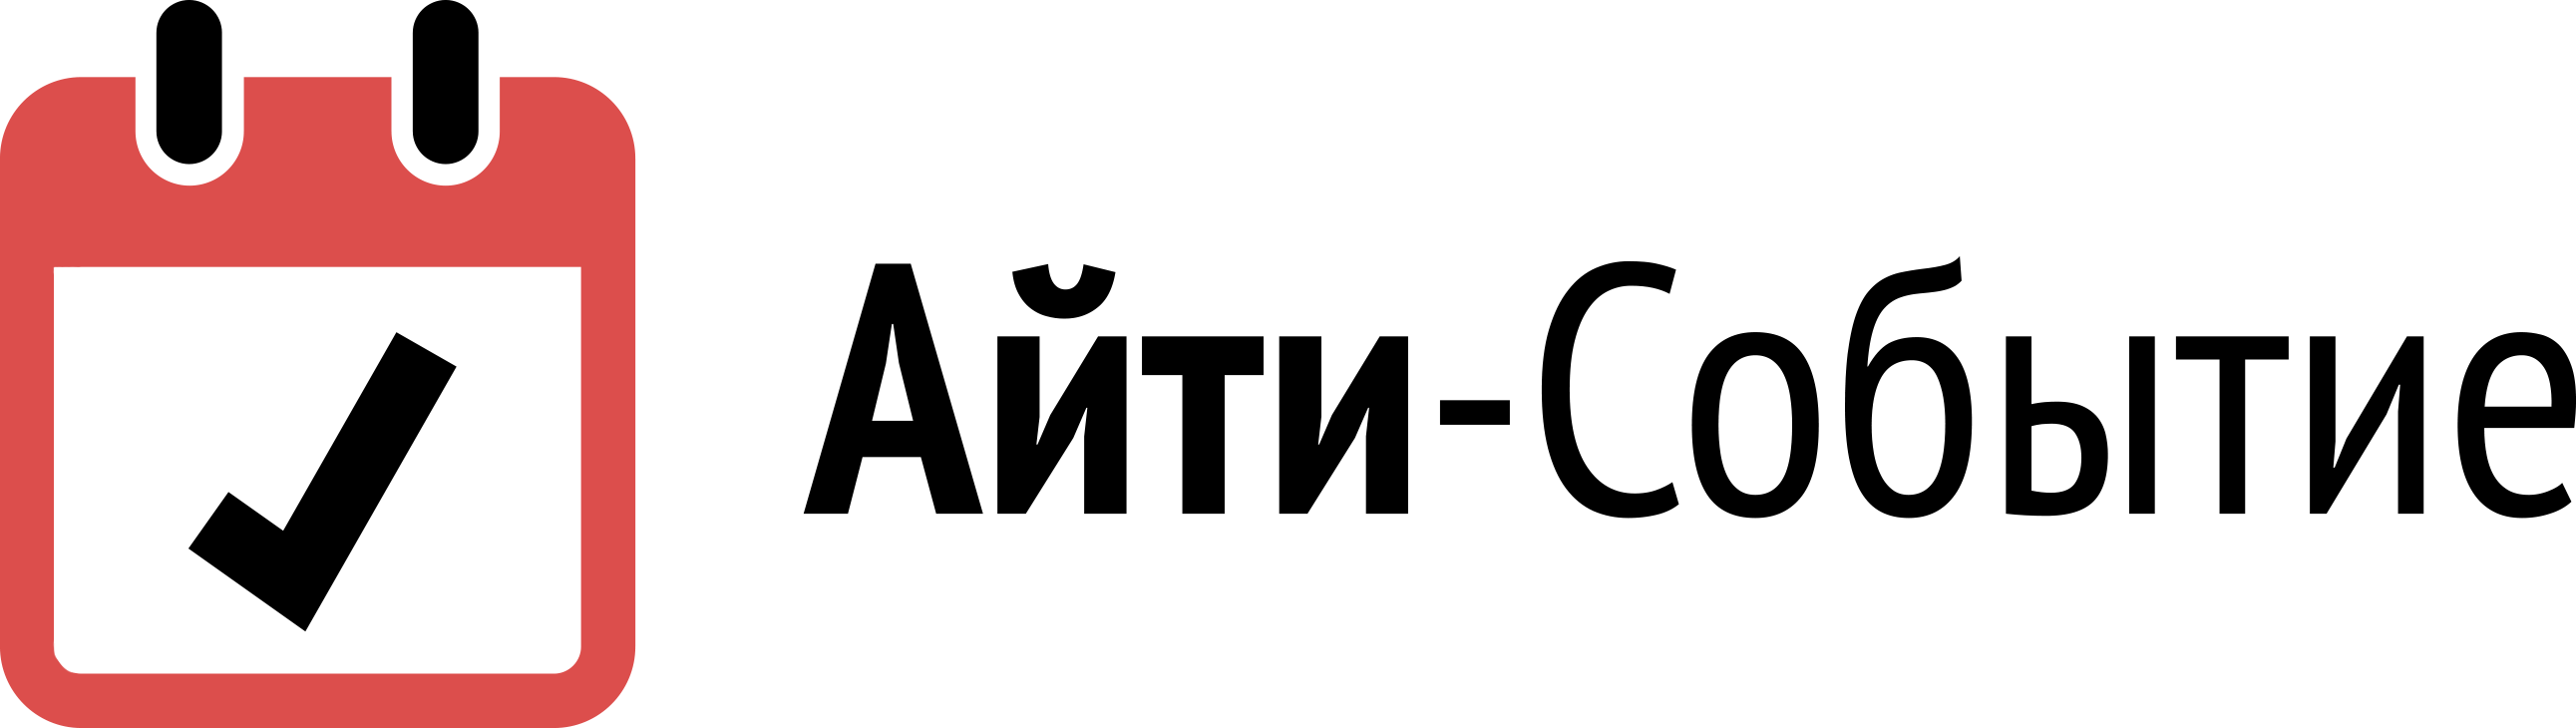 Логотип событийного партнера - Айти-Событие